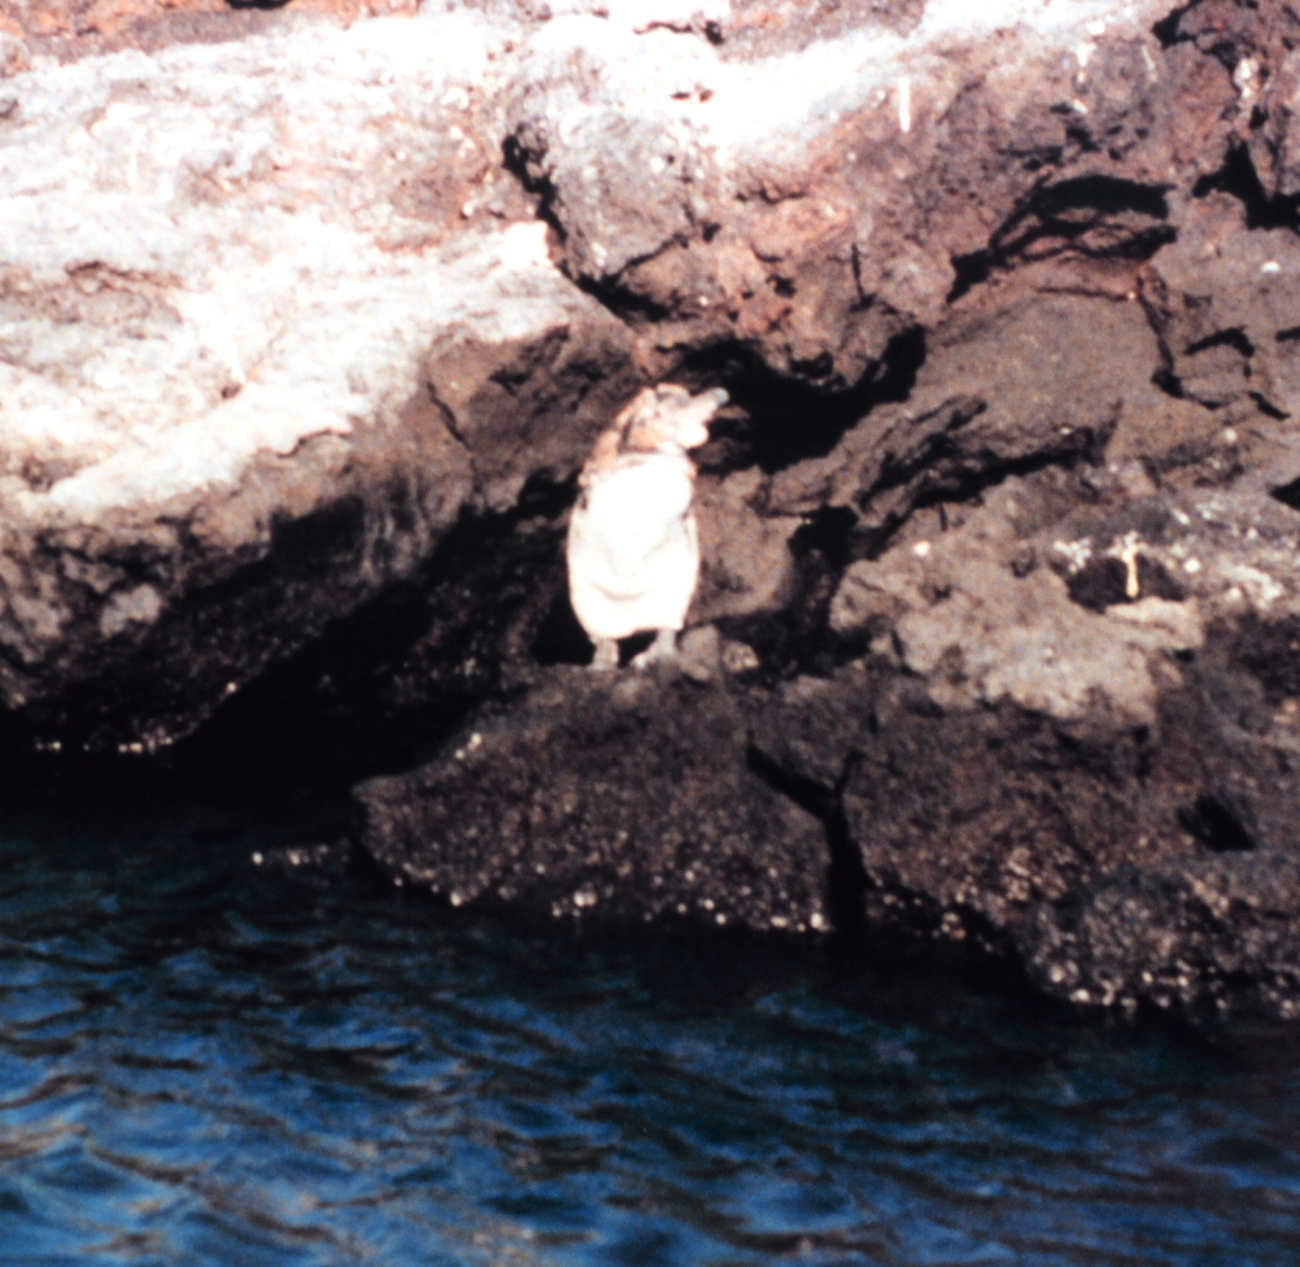 A Galapagos penguin - Spheniscus mendiculus